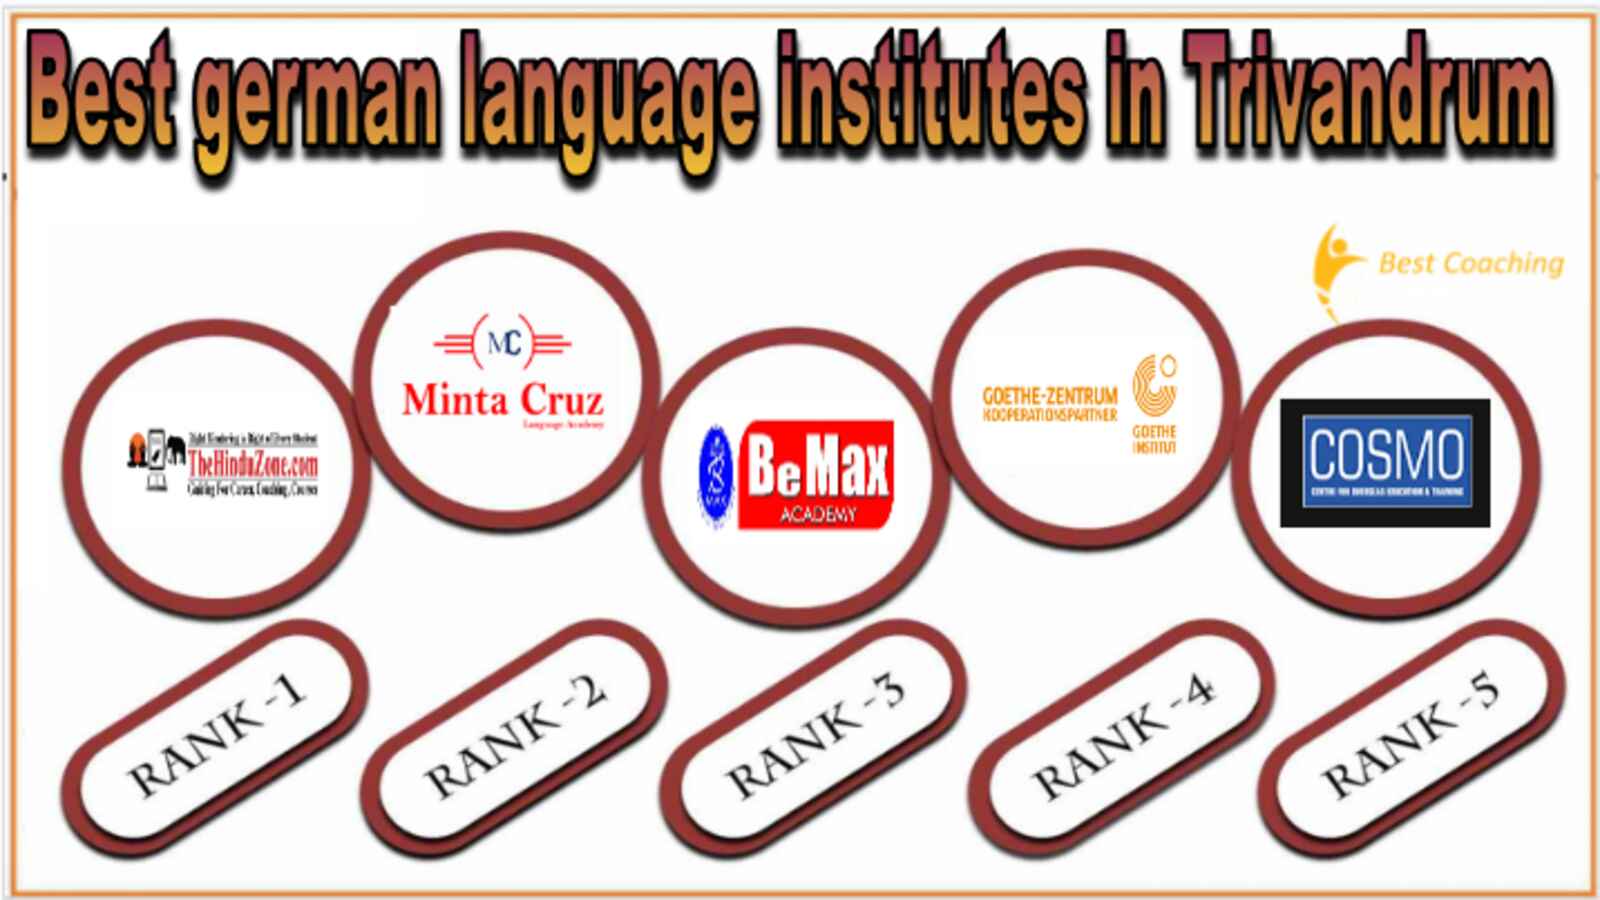 Best german language training institutes in Trivandrum